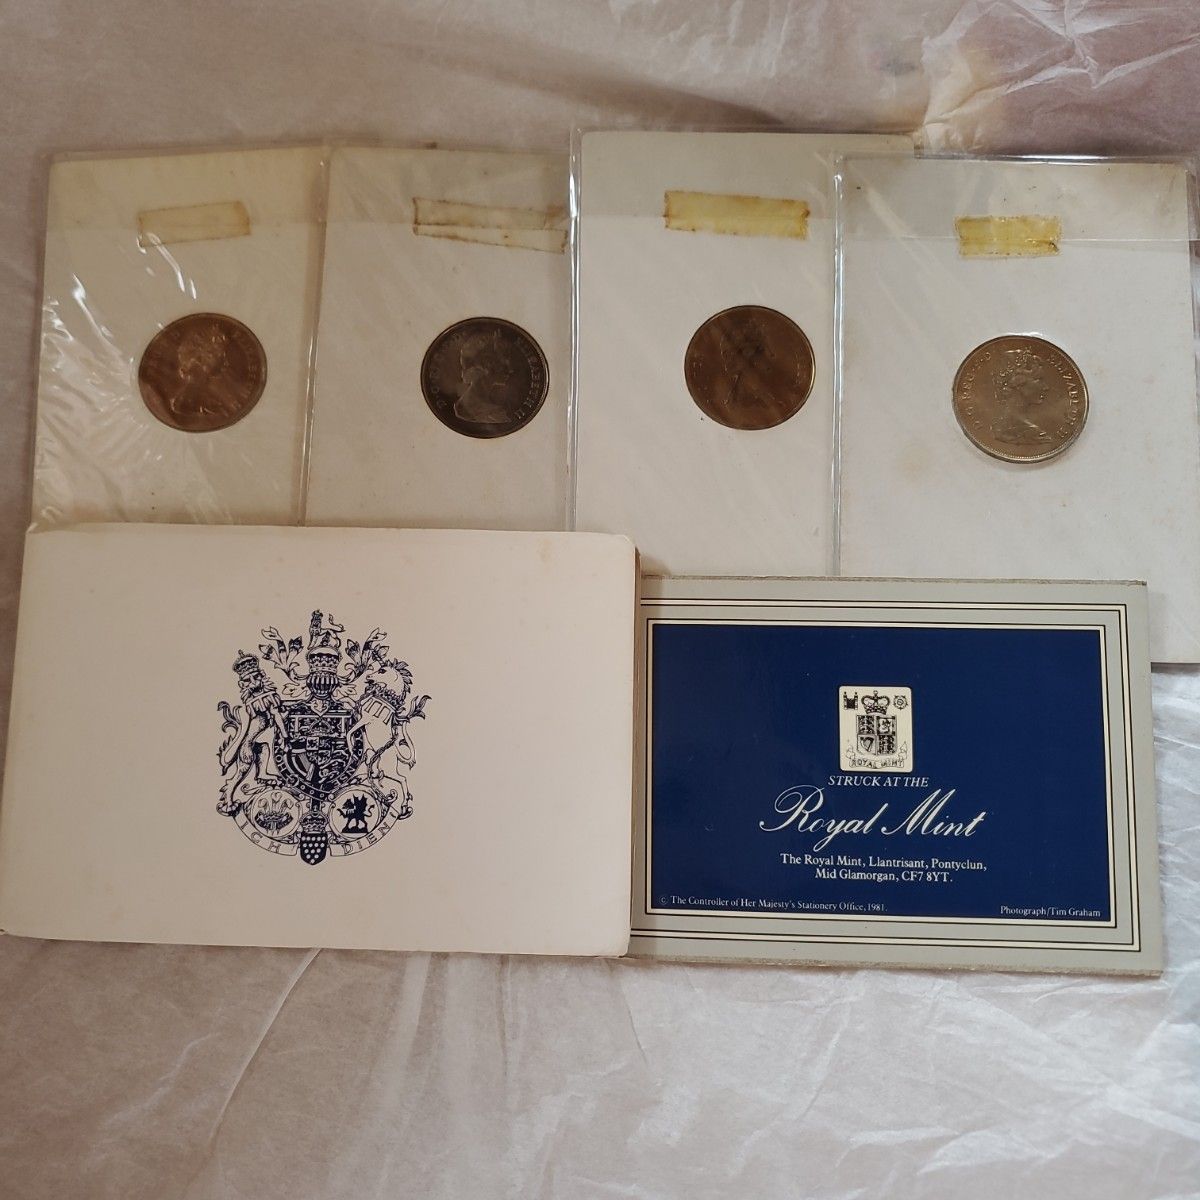 チャールズ皇太子 ダイアナ王妃 結婚記念コイン  硬貨